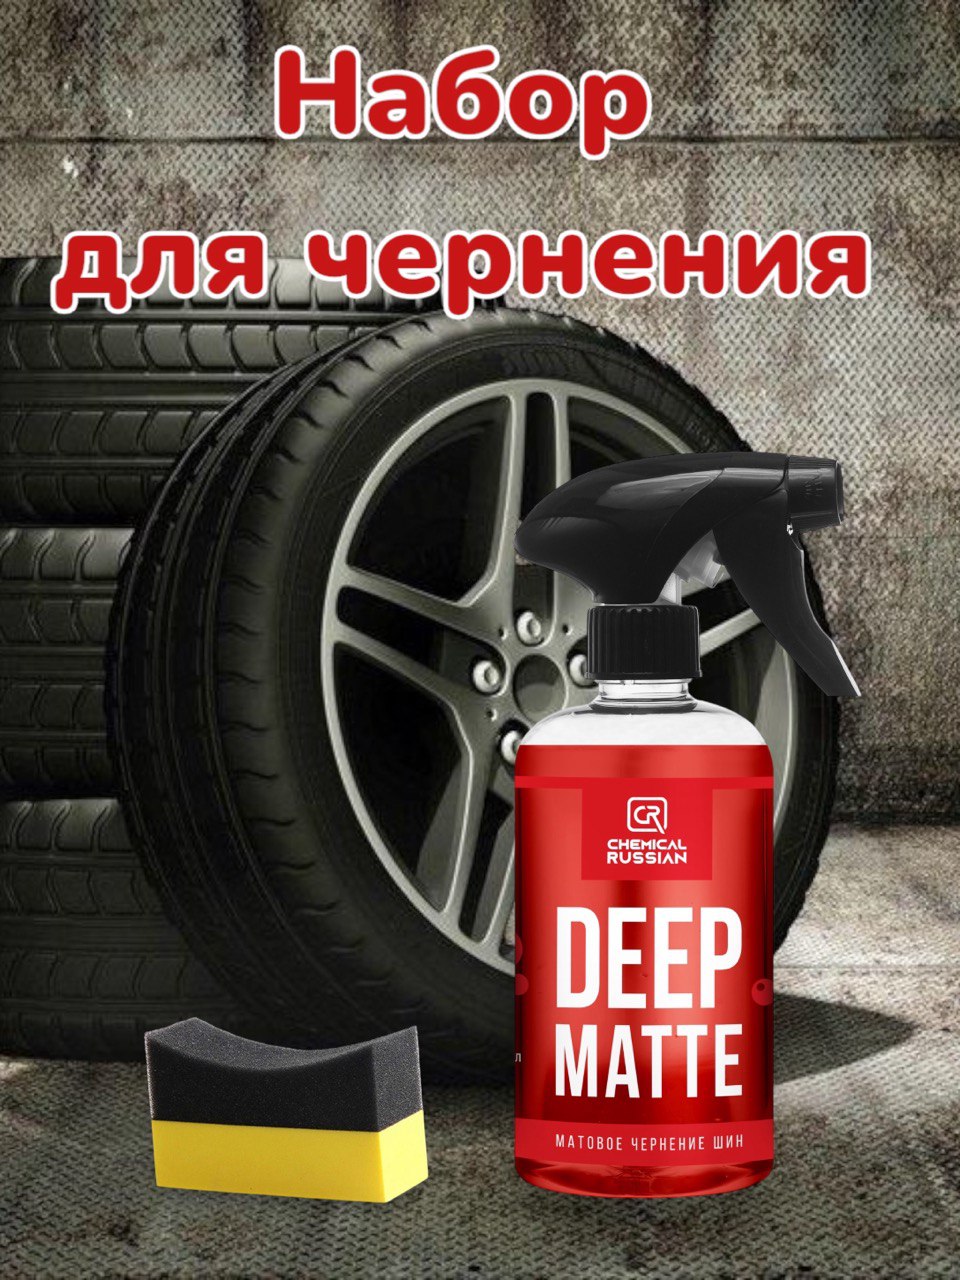 Комплект для чернения резины Chemical Russian Deep Matte с аппликатором Tire pad желтый